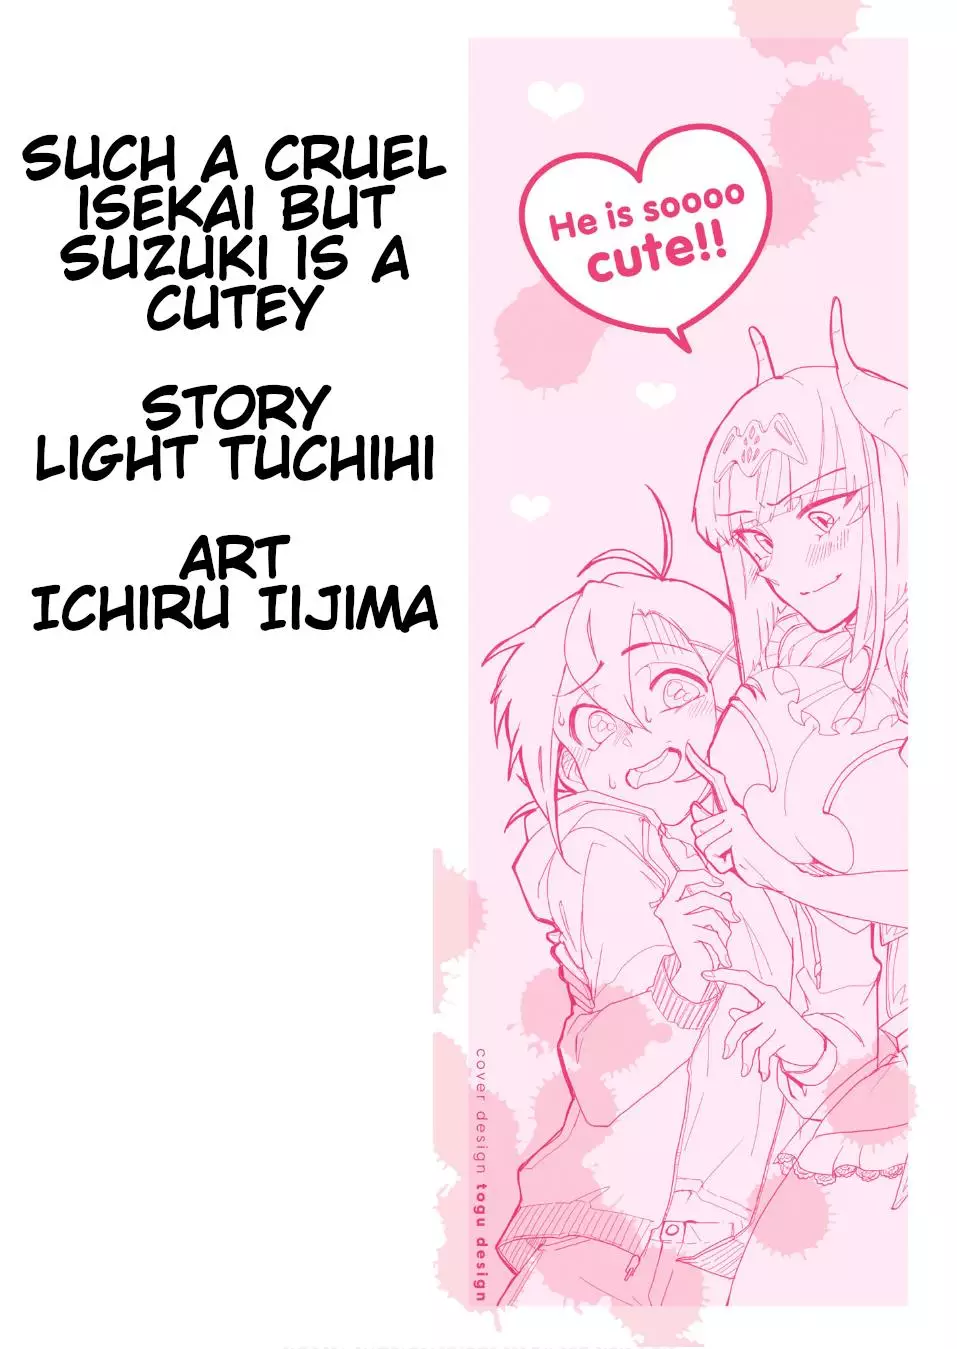 DISC] Such a Cruel Isekai but Suzuki is a Cutey - Ch 1 : r/manga